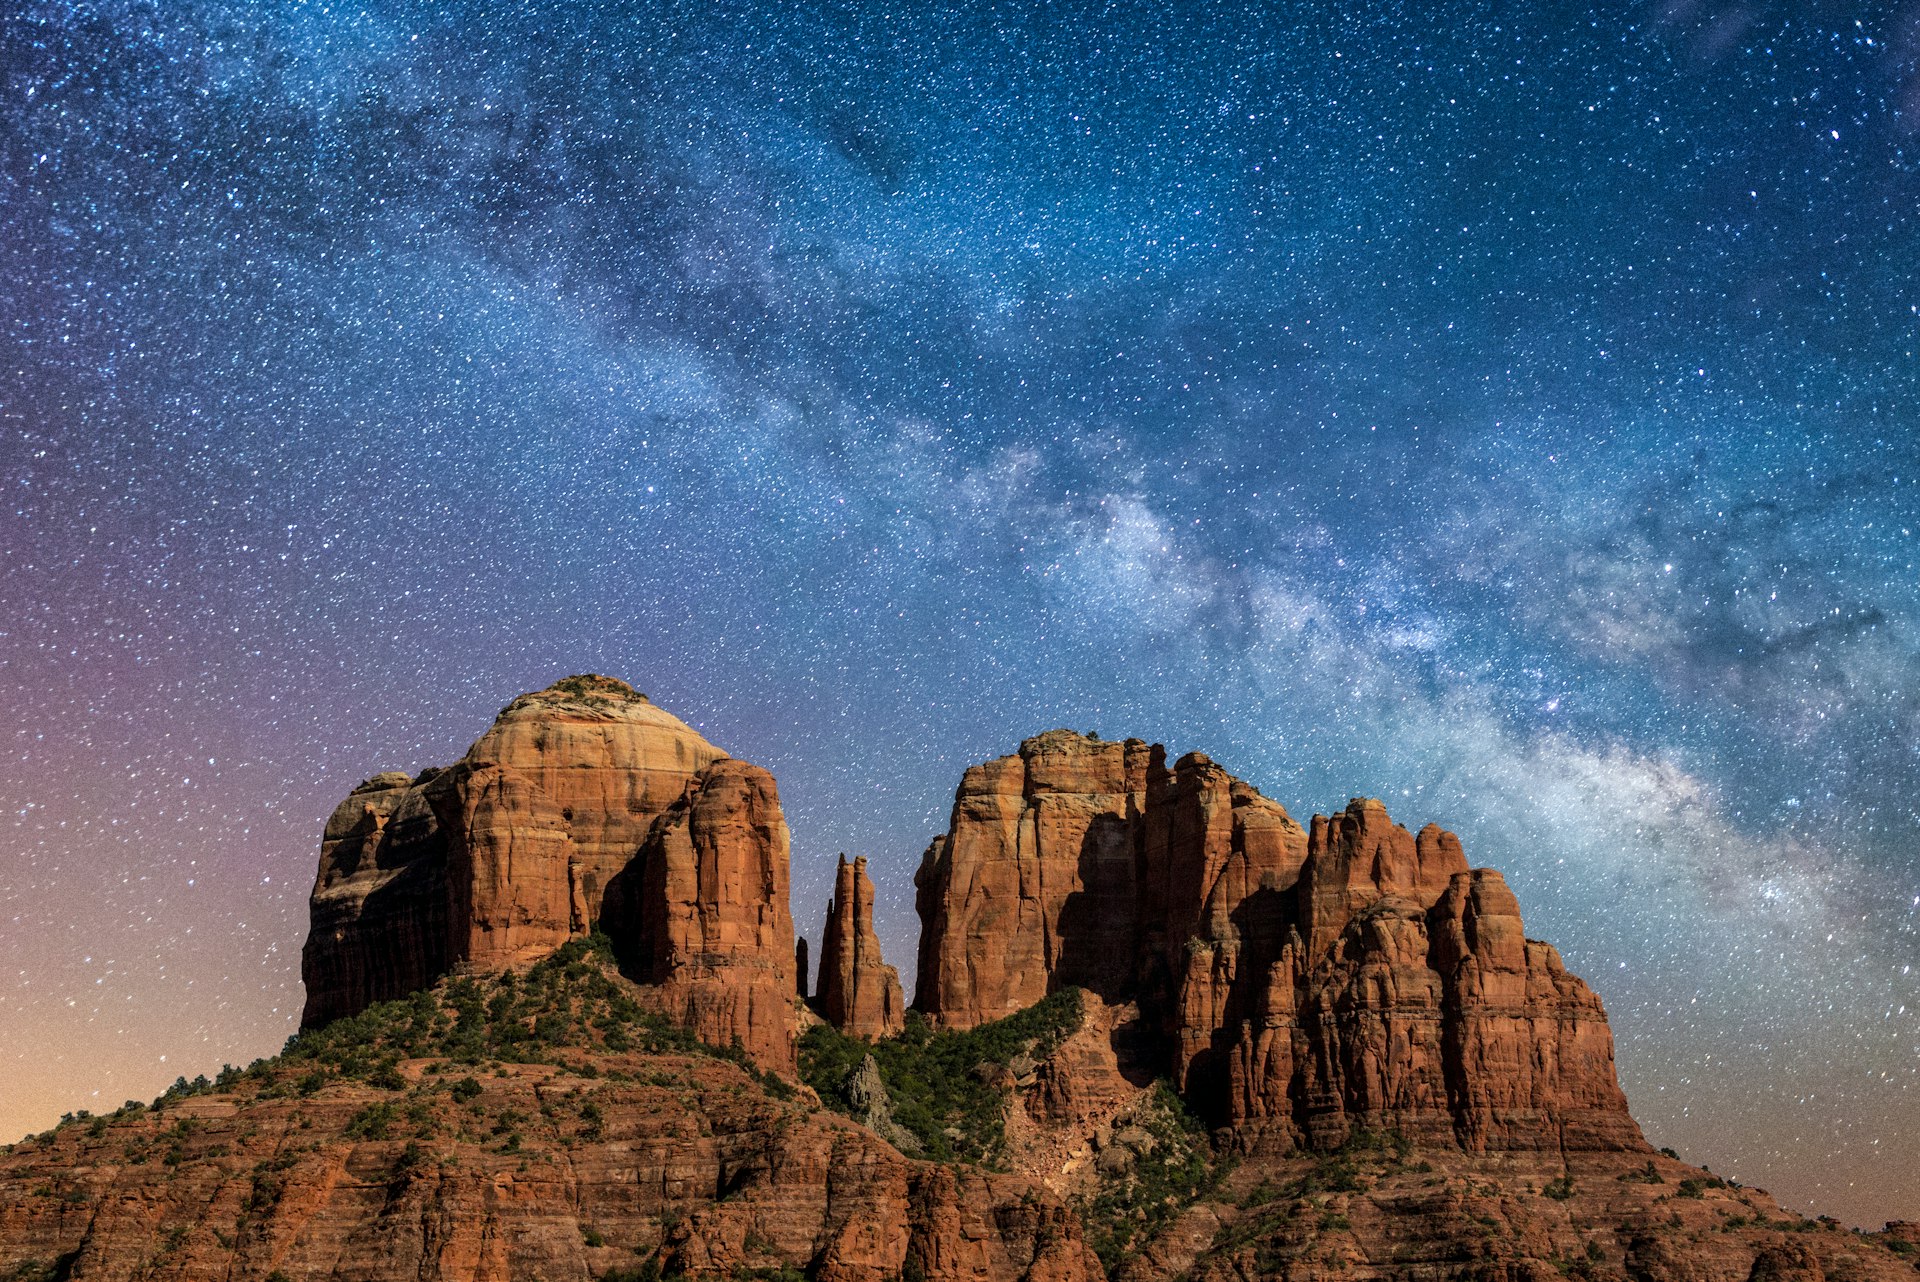 Uma imponente formação rochosa marrom-avermelhada destaca-se contra o céu noturno, iluminada pelas estrelas da Via Láctea